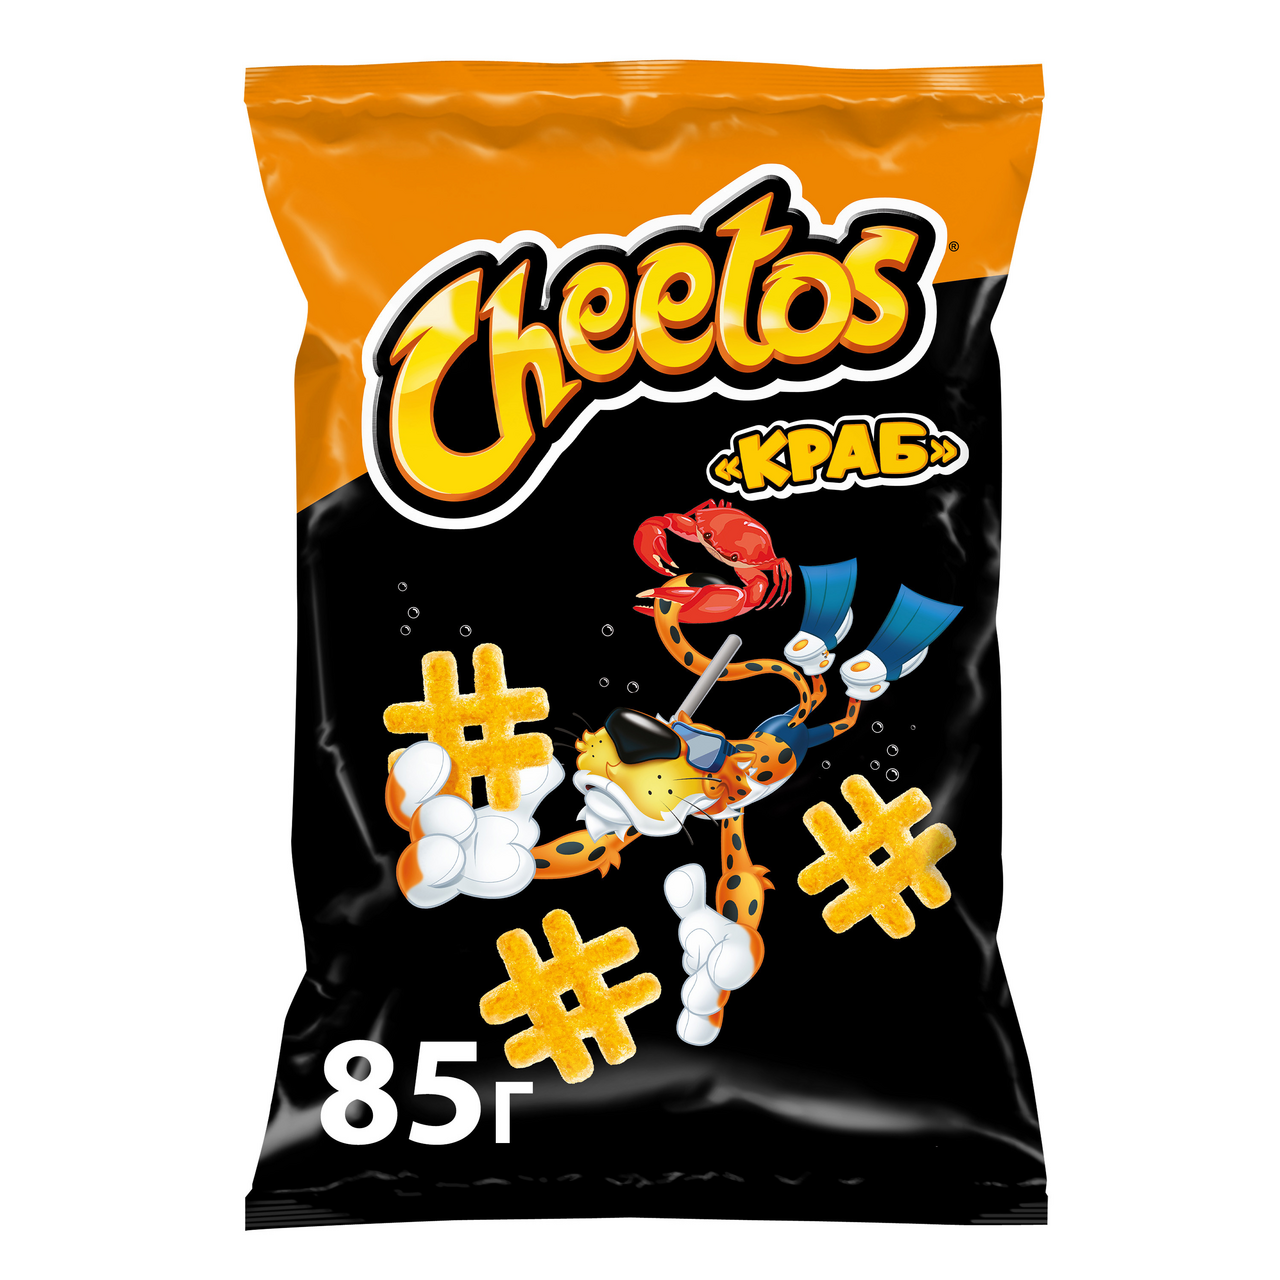 2x spicy cheetos